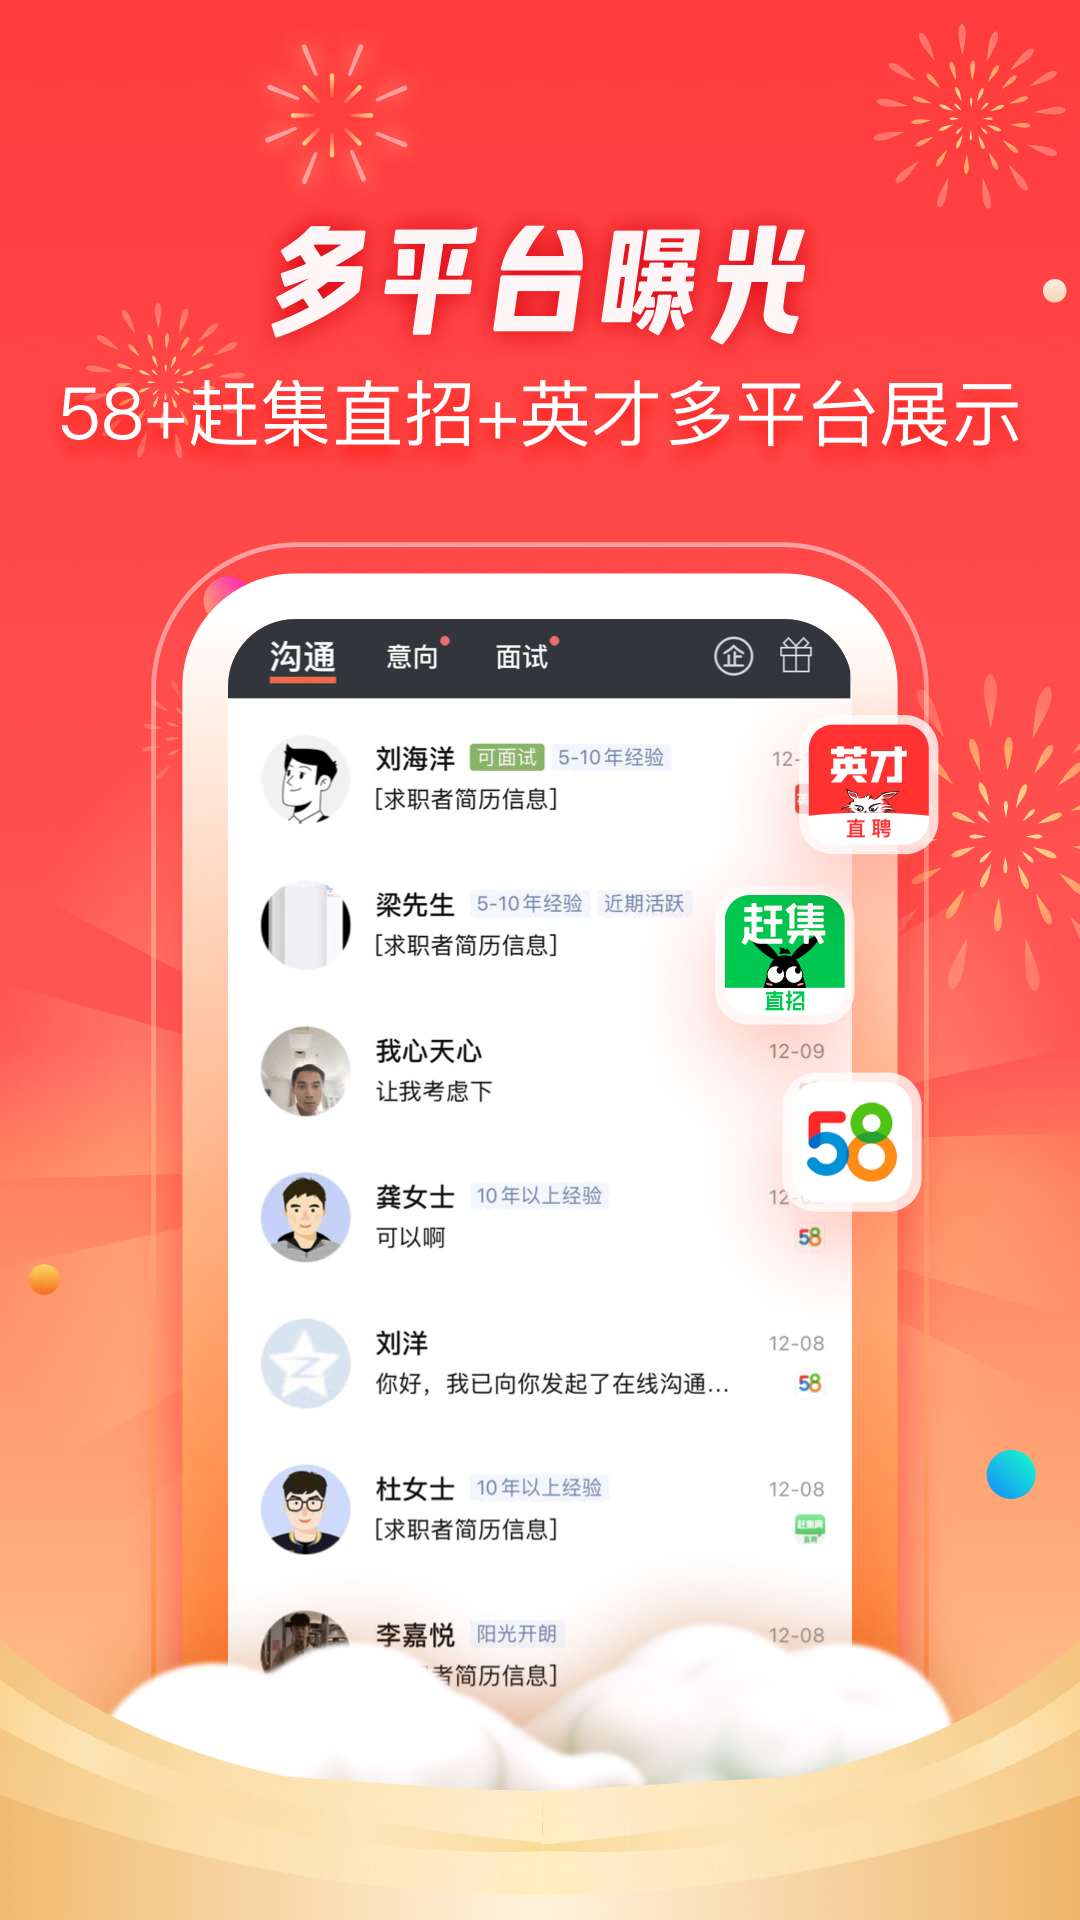 58同城招才猫直聘App下载7.3.5